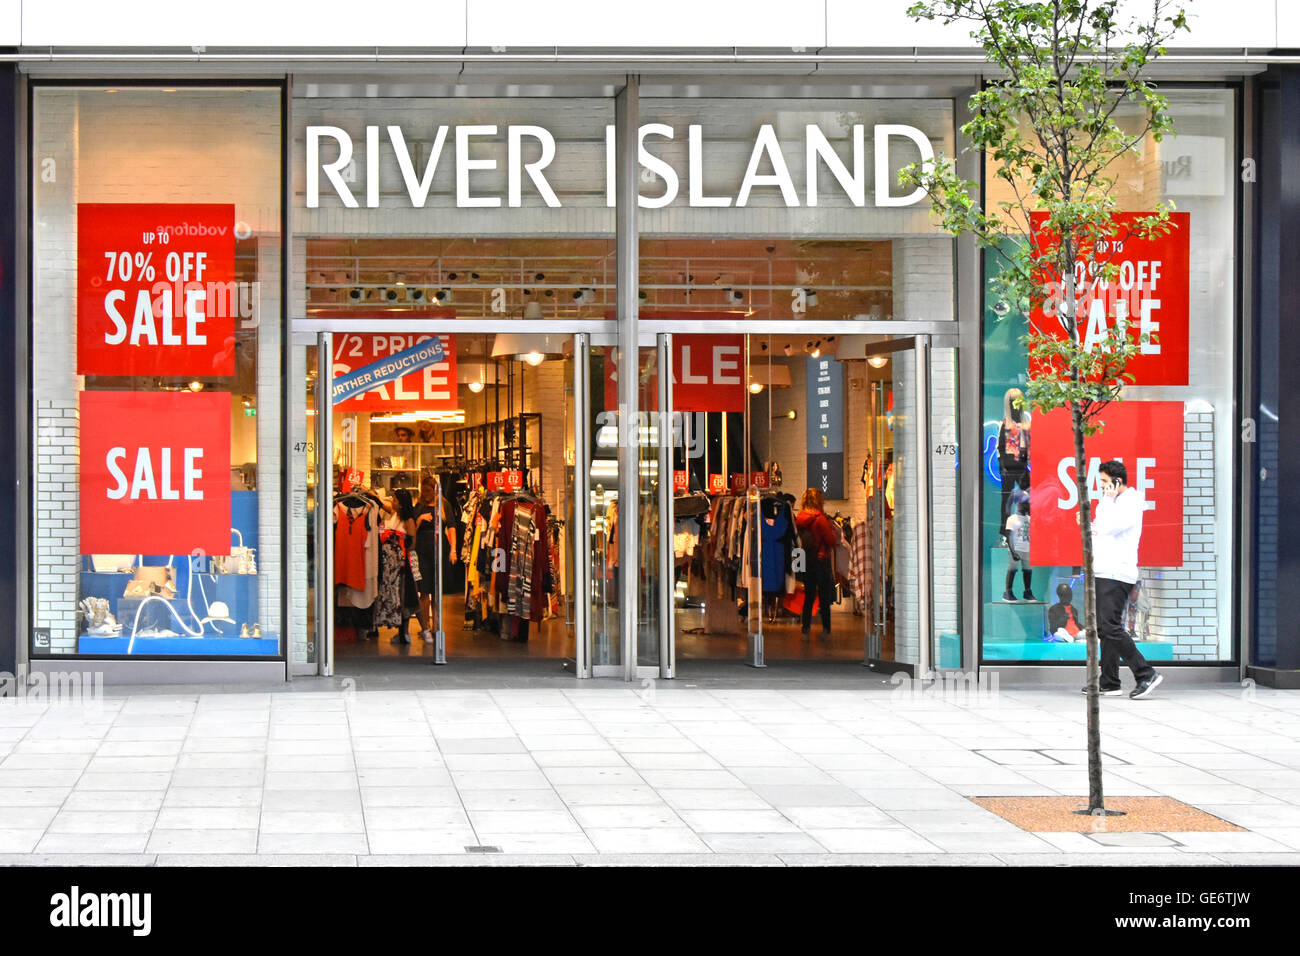 Verkauf rabatt Plakate im Schaufenster an River Island Bekleidung Shop  vorne und der Eingang befindet sich in der Oxford Street West End London  Shopping Street in England Großbritannien Stockfotografie - Alamy